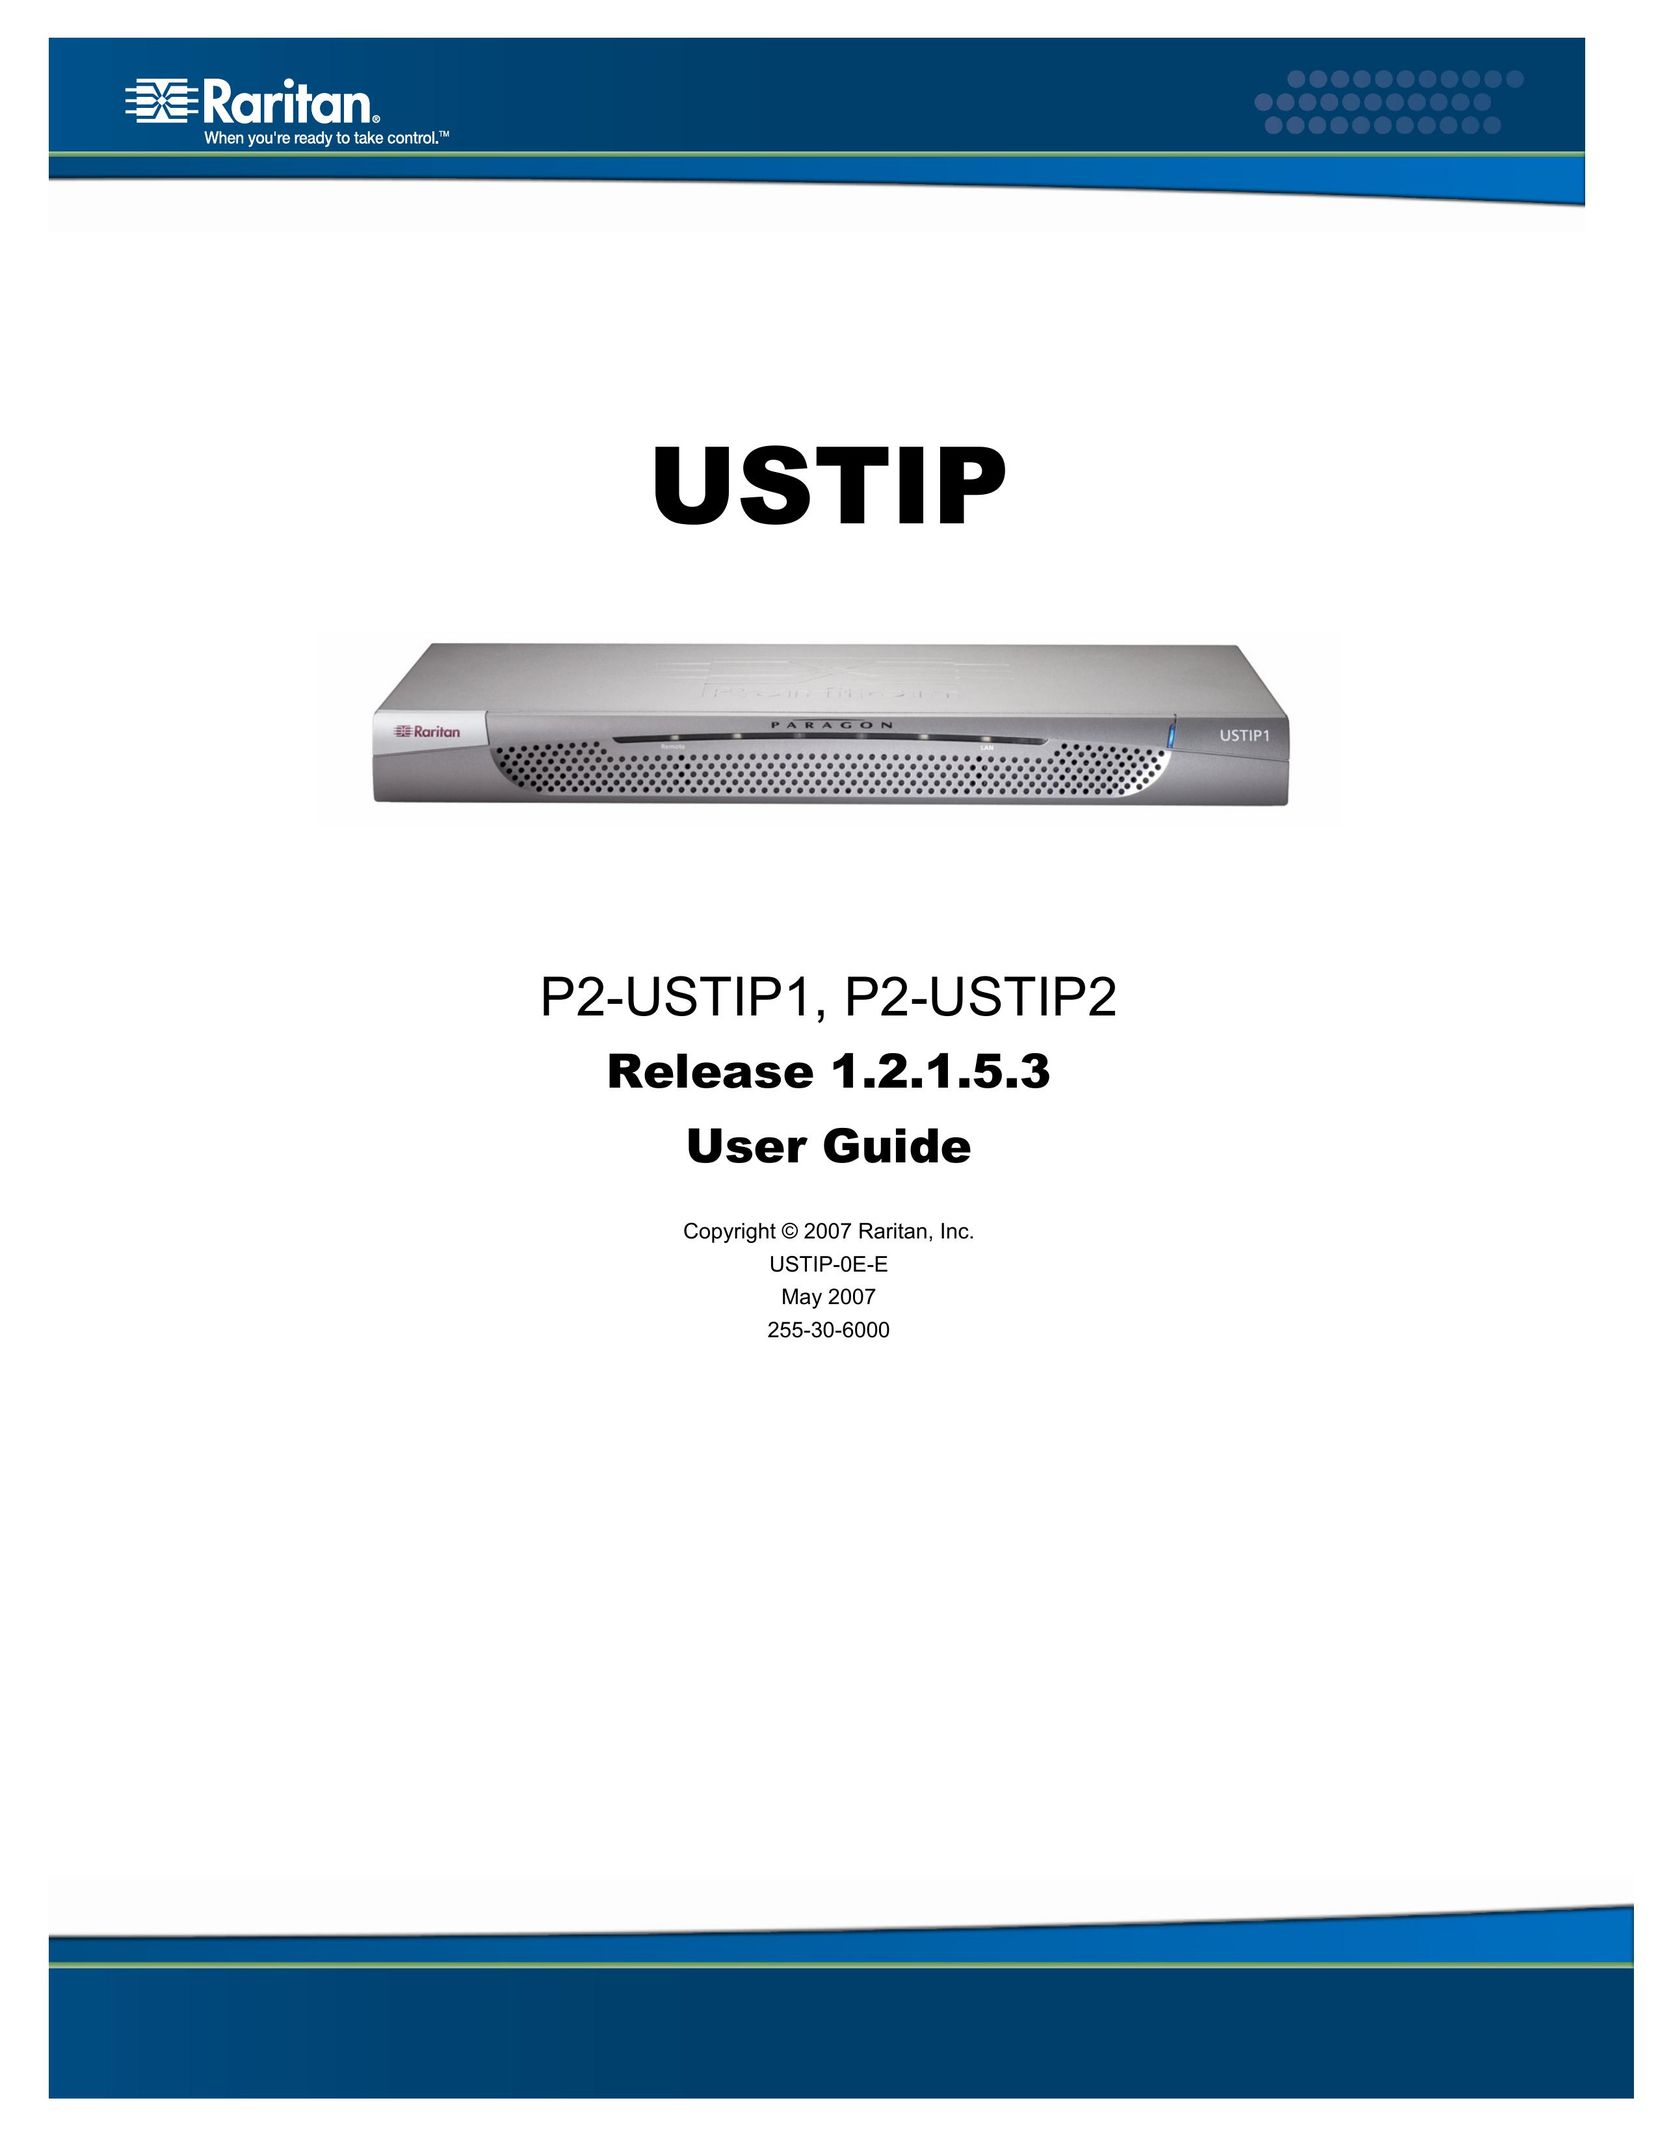 Raritan Computer P2-USTIP1 Home Theater Server User Manual